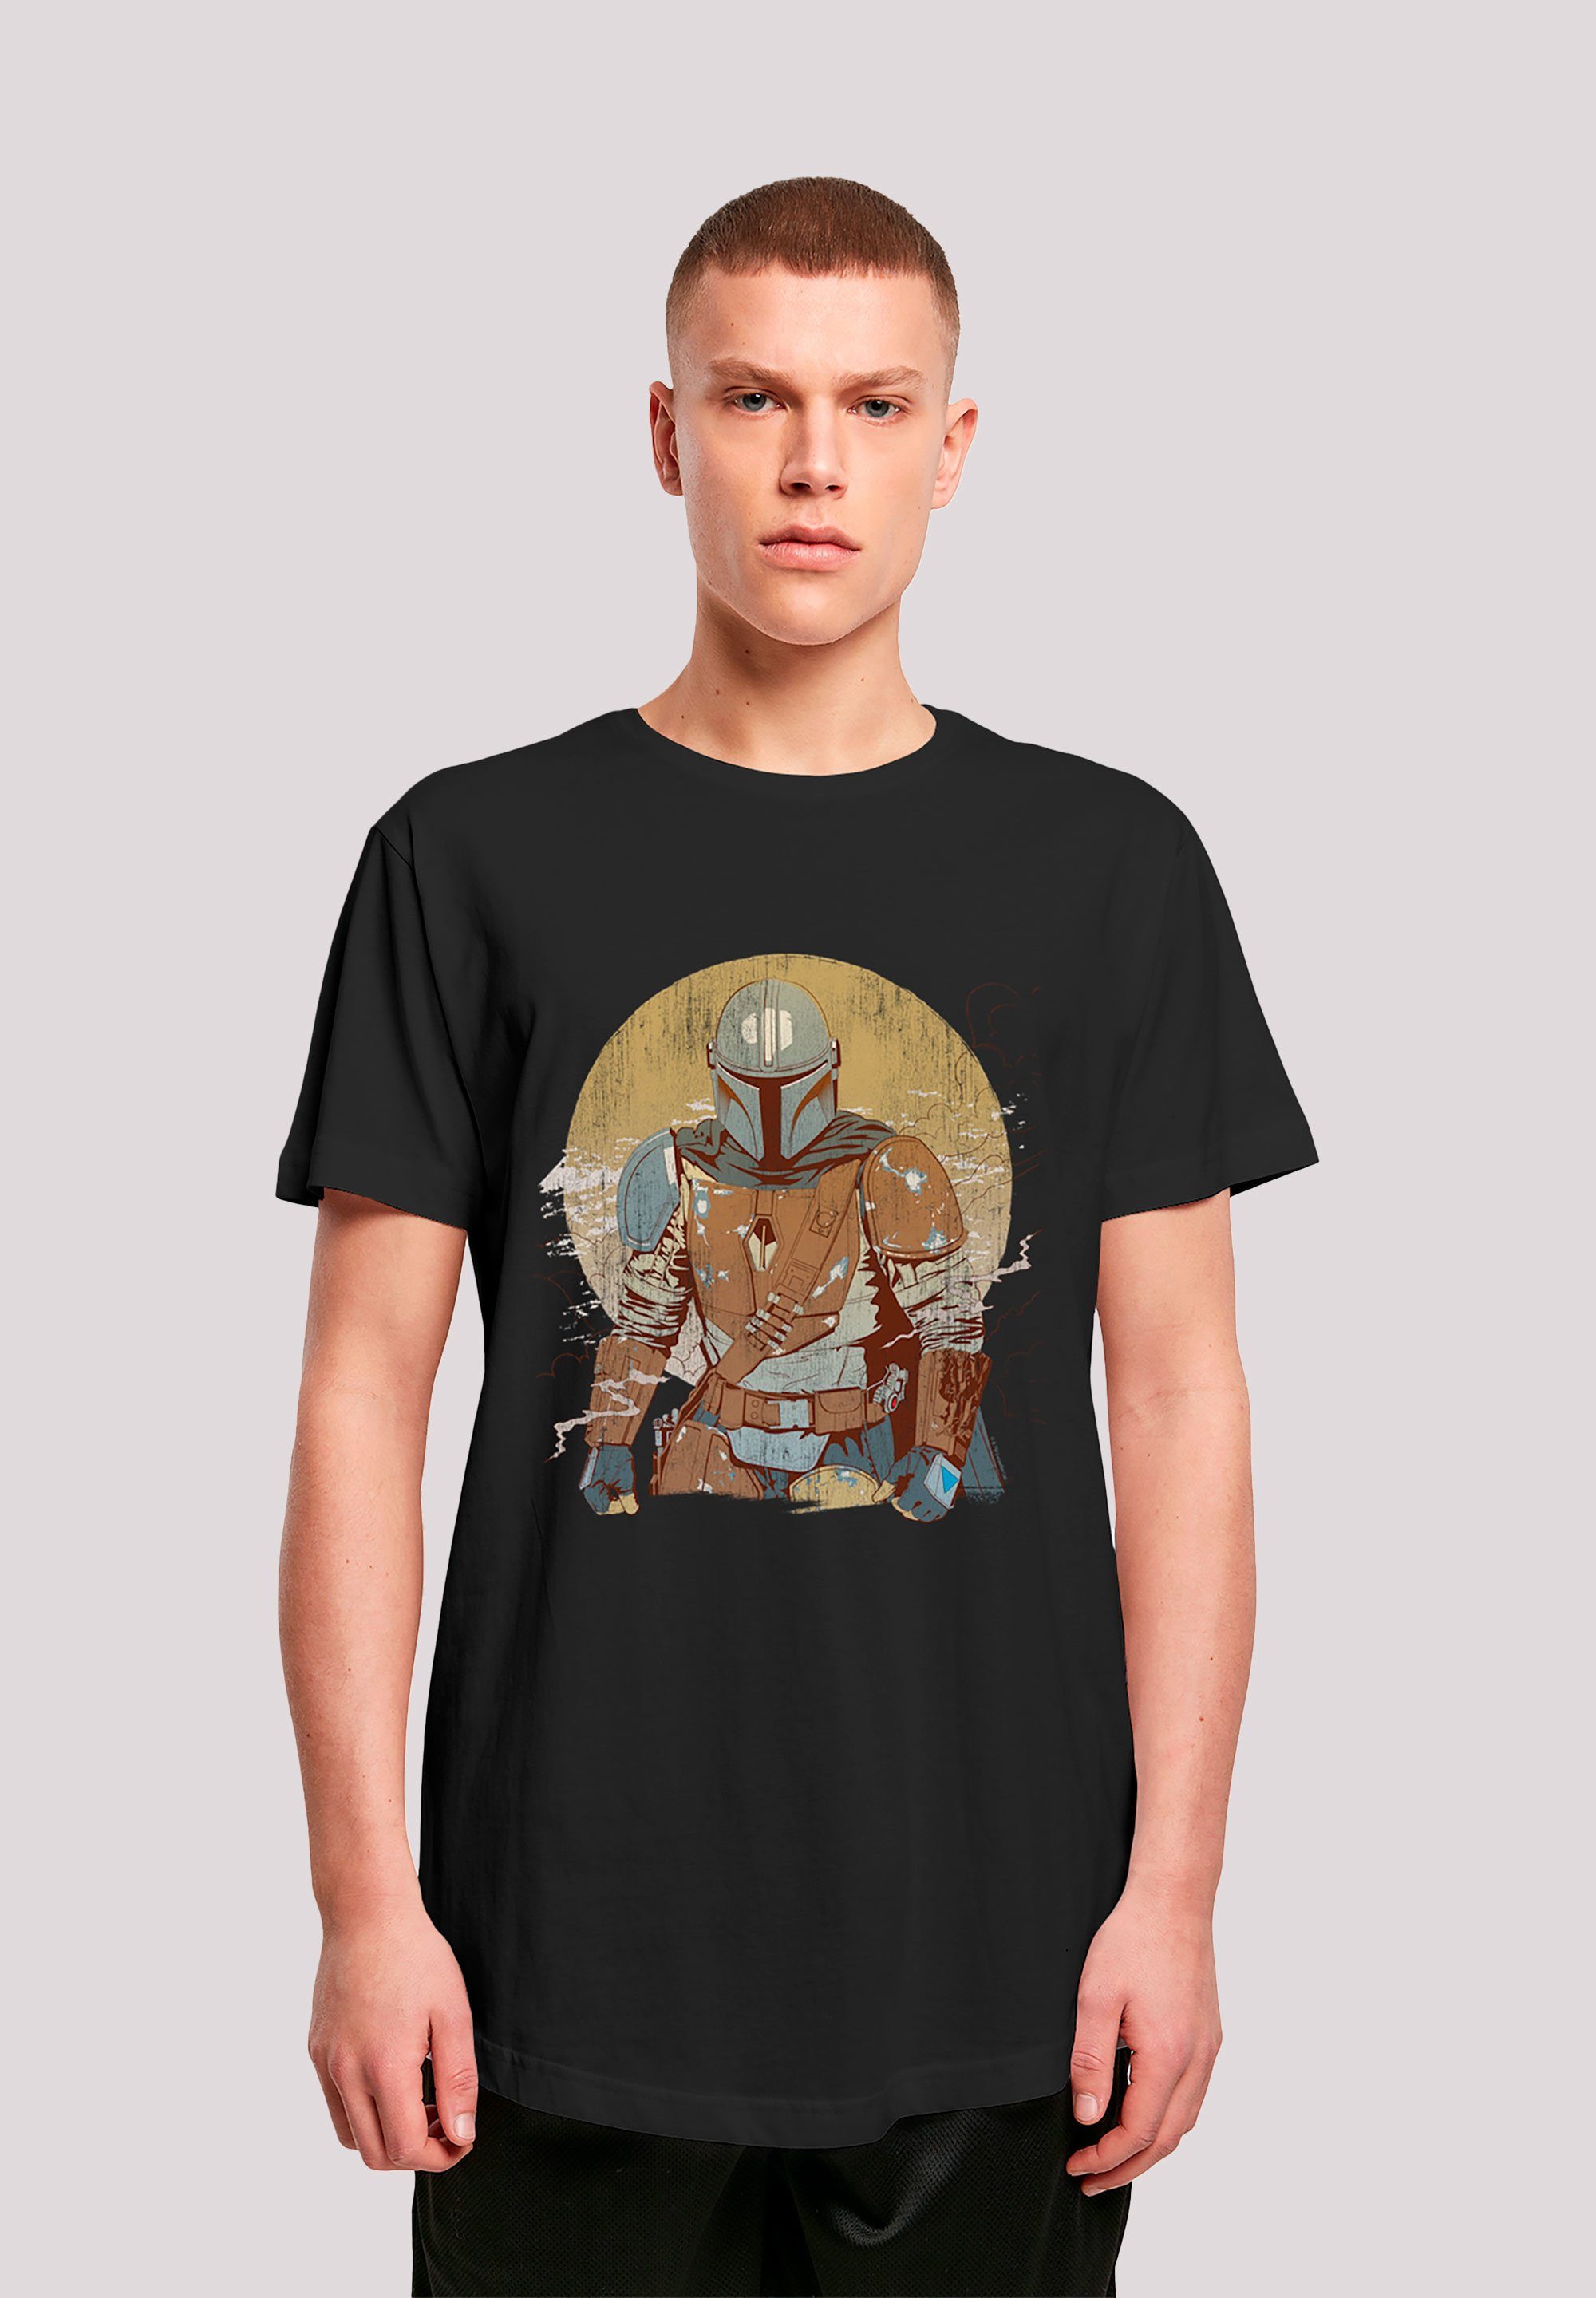 F4NT4STIC T-Shirt Star Wars The Mandalorian Distressed Warrior Krieg der Sterne Print